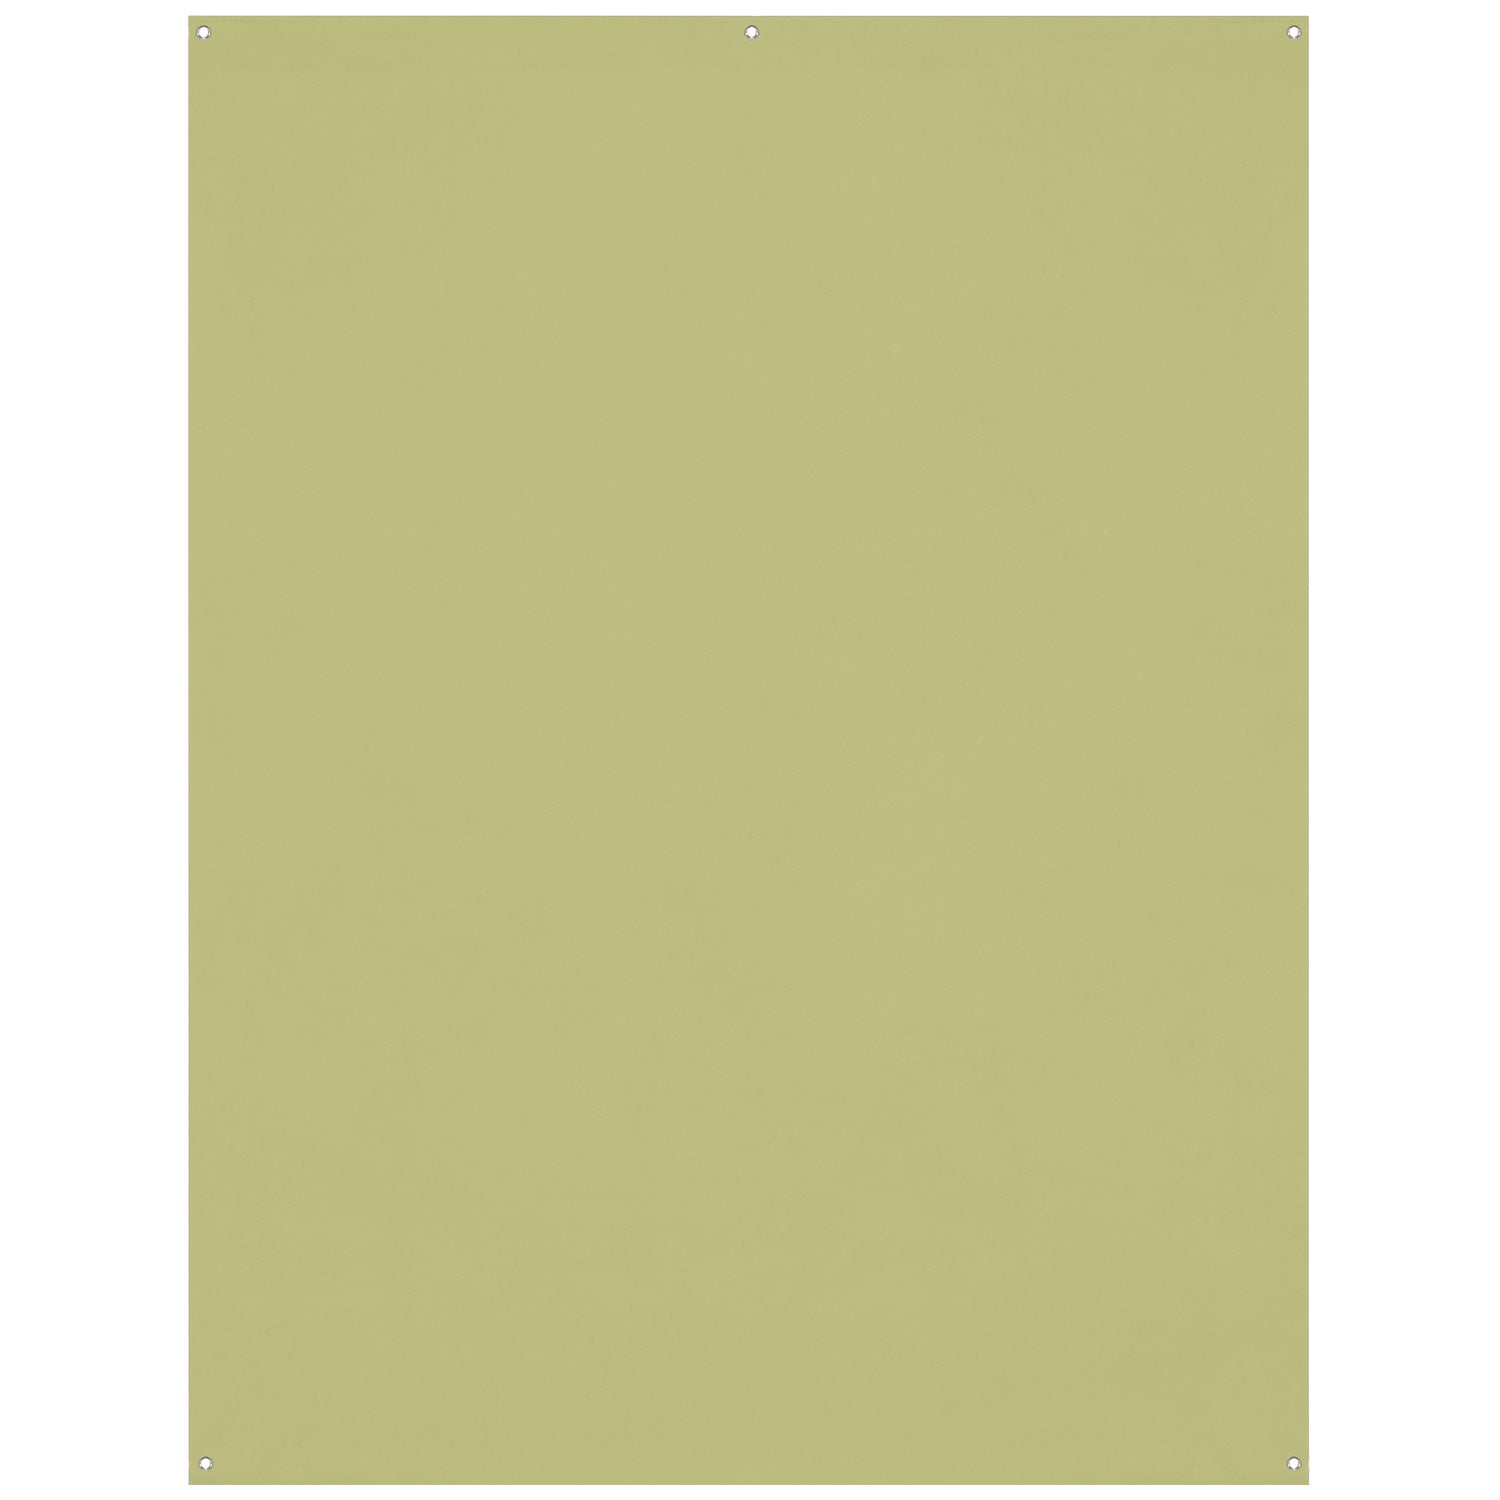 X-Drop Wrinkle-Resistant Backdrop - Light Moss Green (5' x 7')